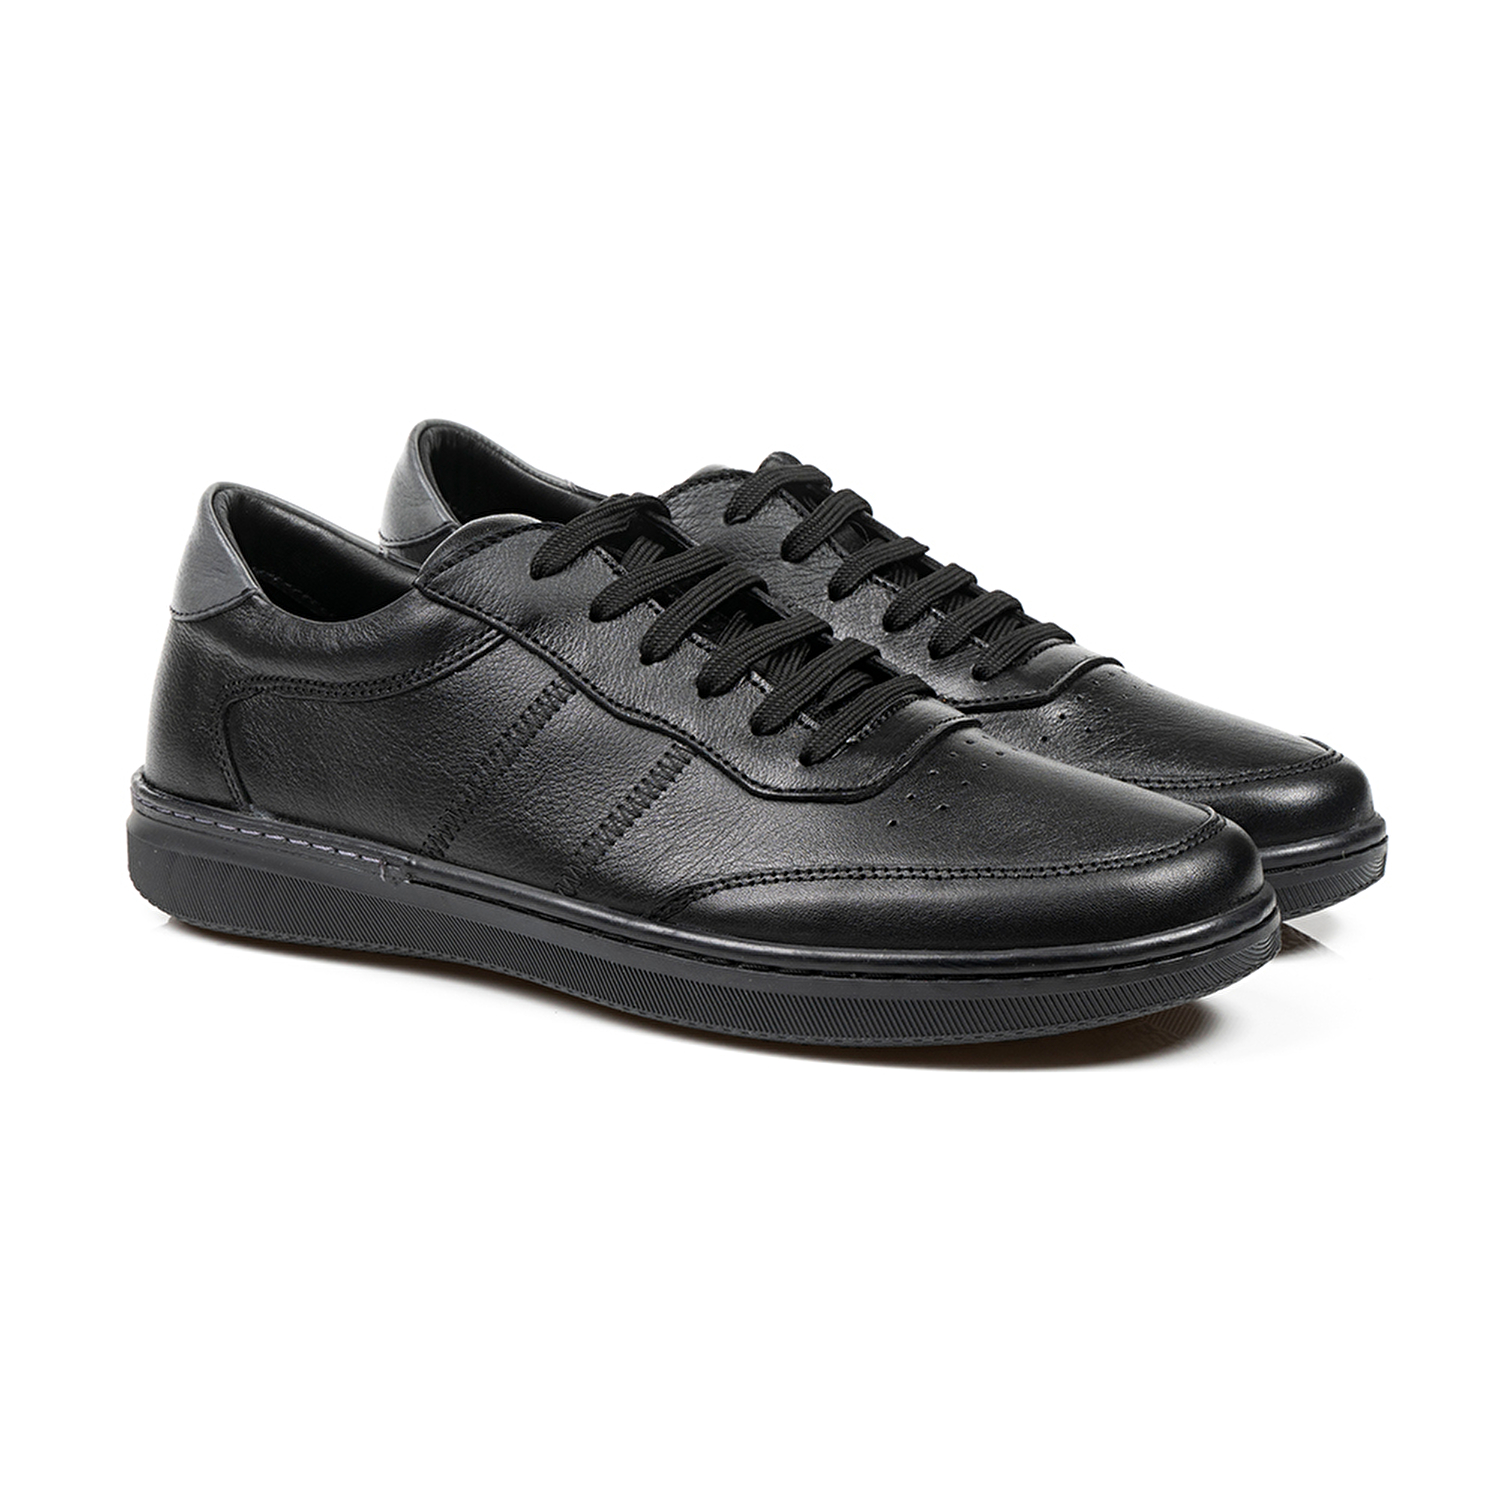 Klasik Erkek Ayakkabı Siyah 67905-2